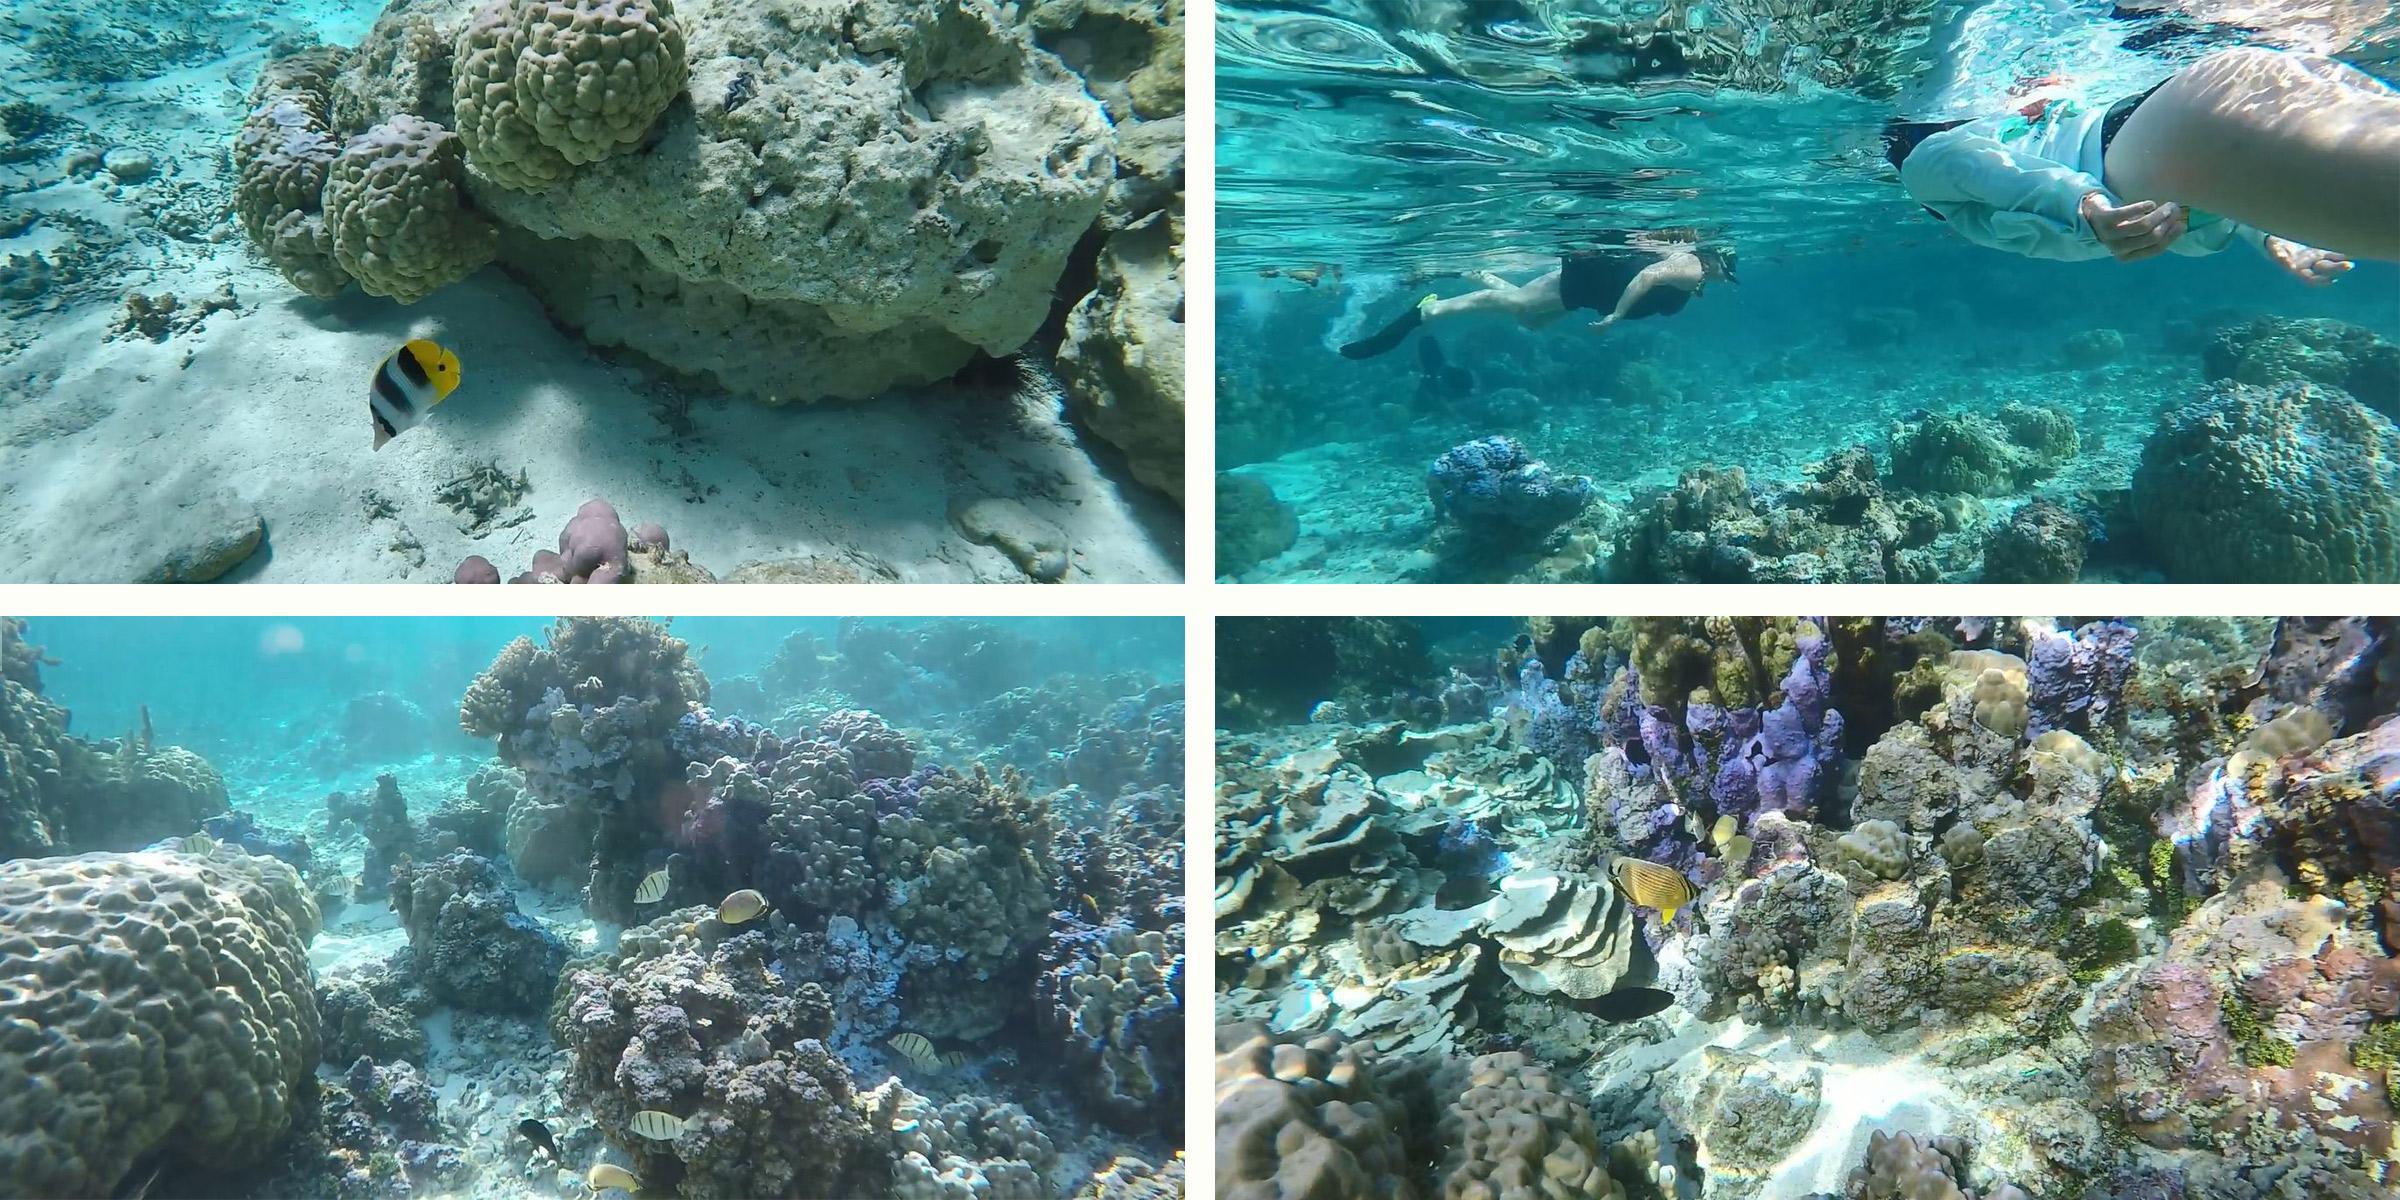 tahiti_snorkeling_fish_corals_2400x1200_web.jpg?t=1HDYzm&itok=Jb6H1cc8